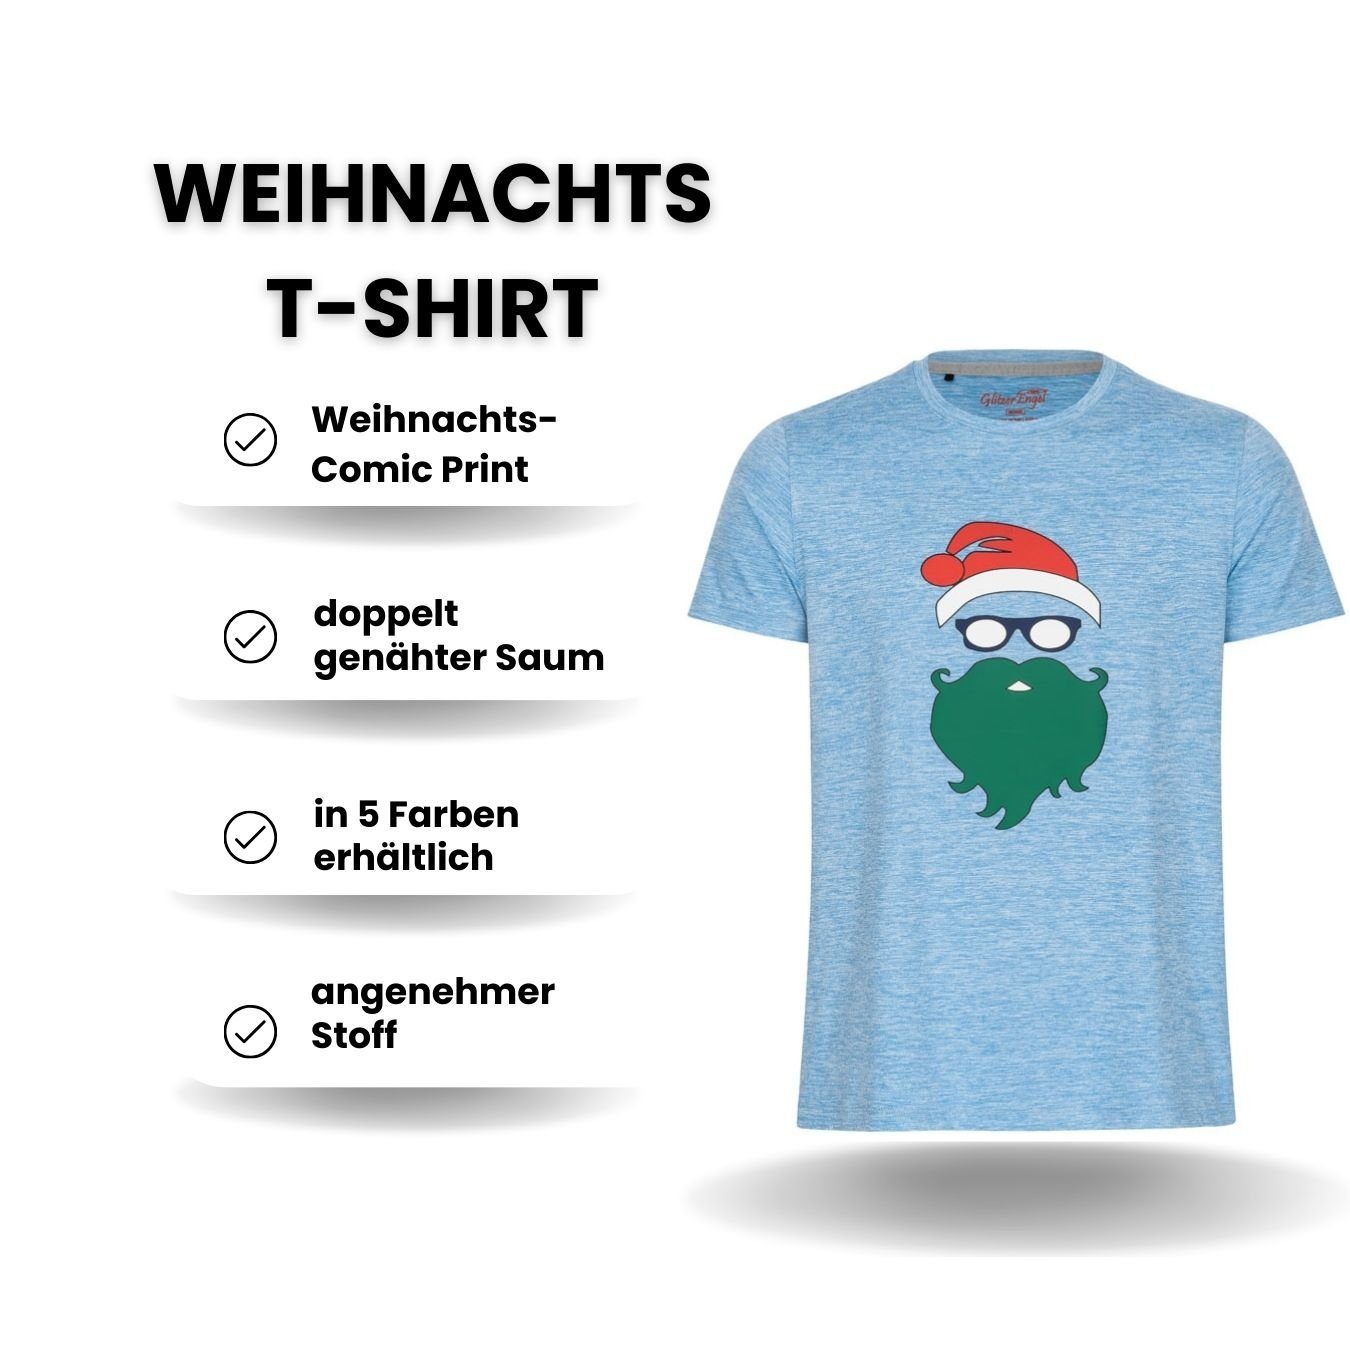 Weihnachtsfeier, Herren Printshirt Weihnachtsoutfit Männer blau Weihnachtsshirt Weihnachtsgeschenk, Weihnachtsfoto Berlinsel T-Shirt